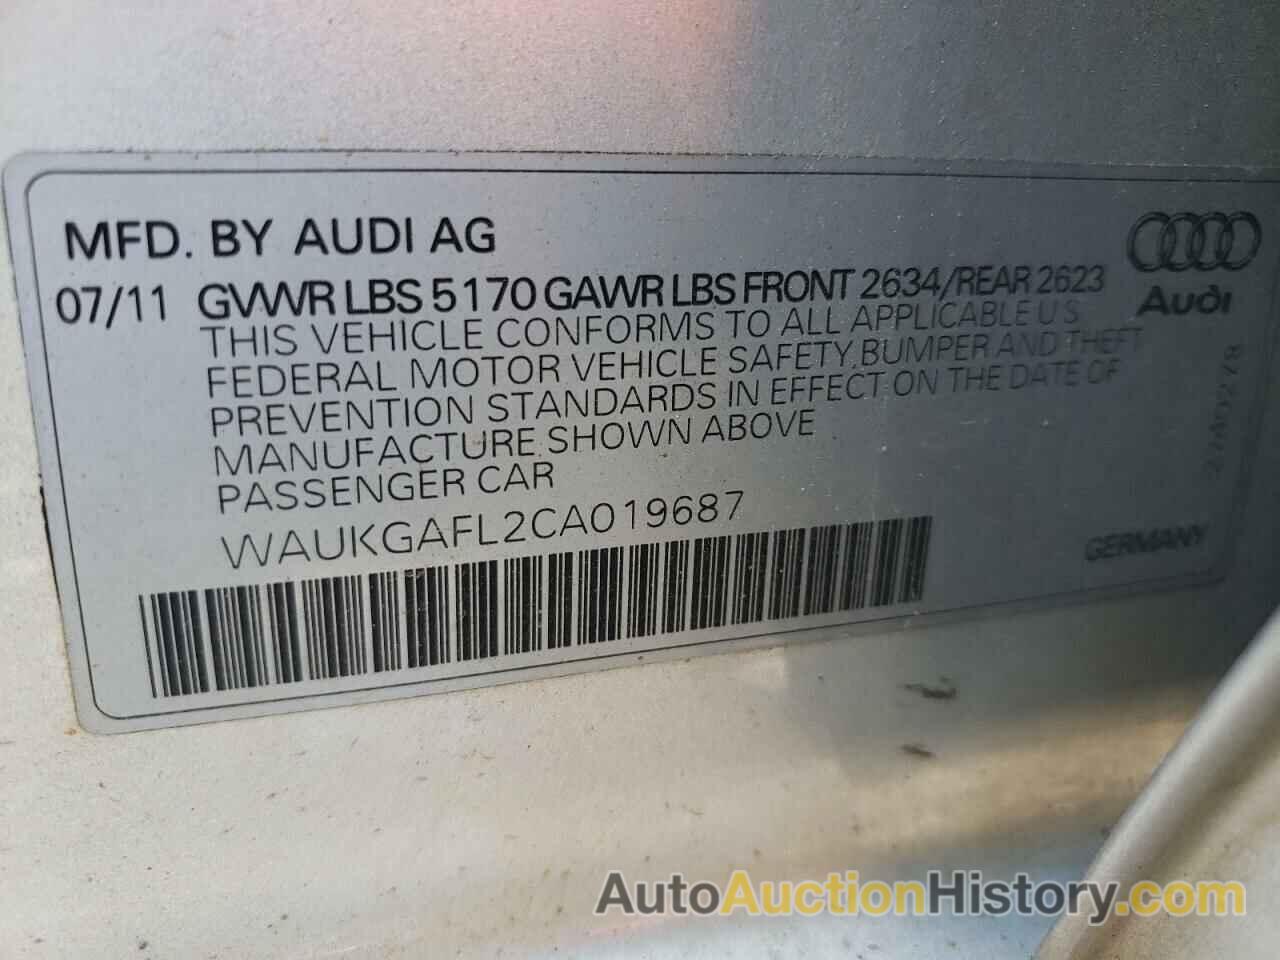 AUDI S4/RS4 PRESTIGE, WAUKGAFL2CA019687